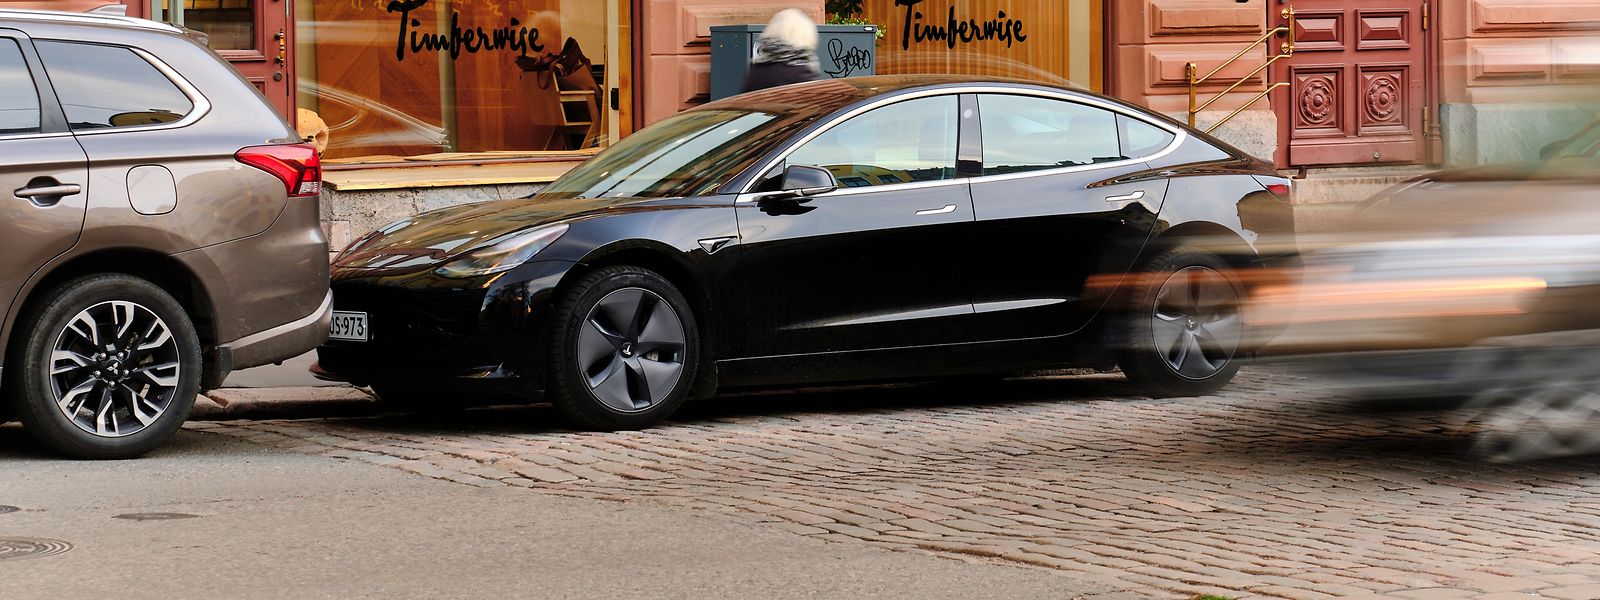 Der Tesla sieht aus, als würde nur parken, hat aber dank der insgesamt acht Außenkameras sein Umfeld bei Bedarf immer im Blick.